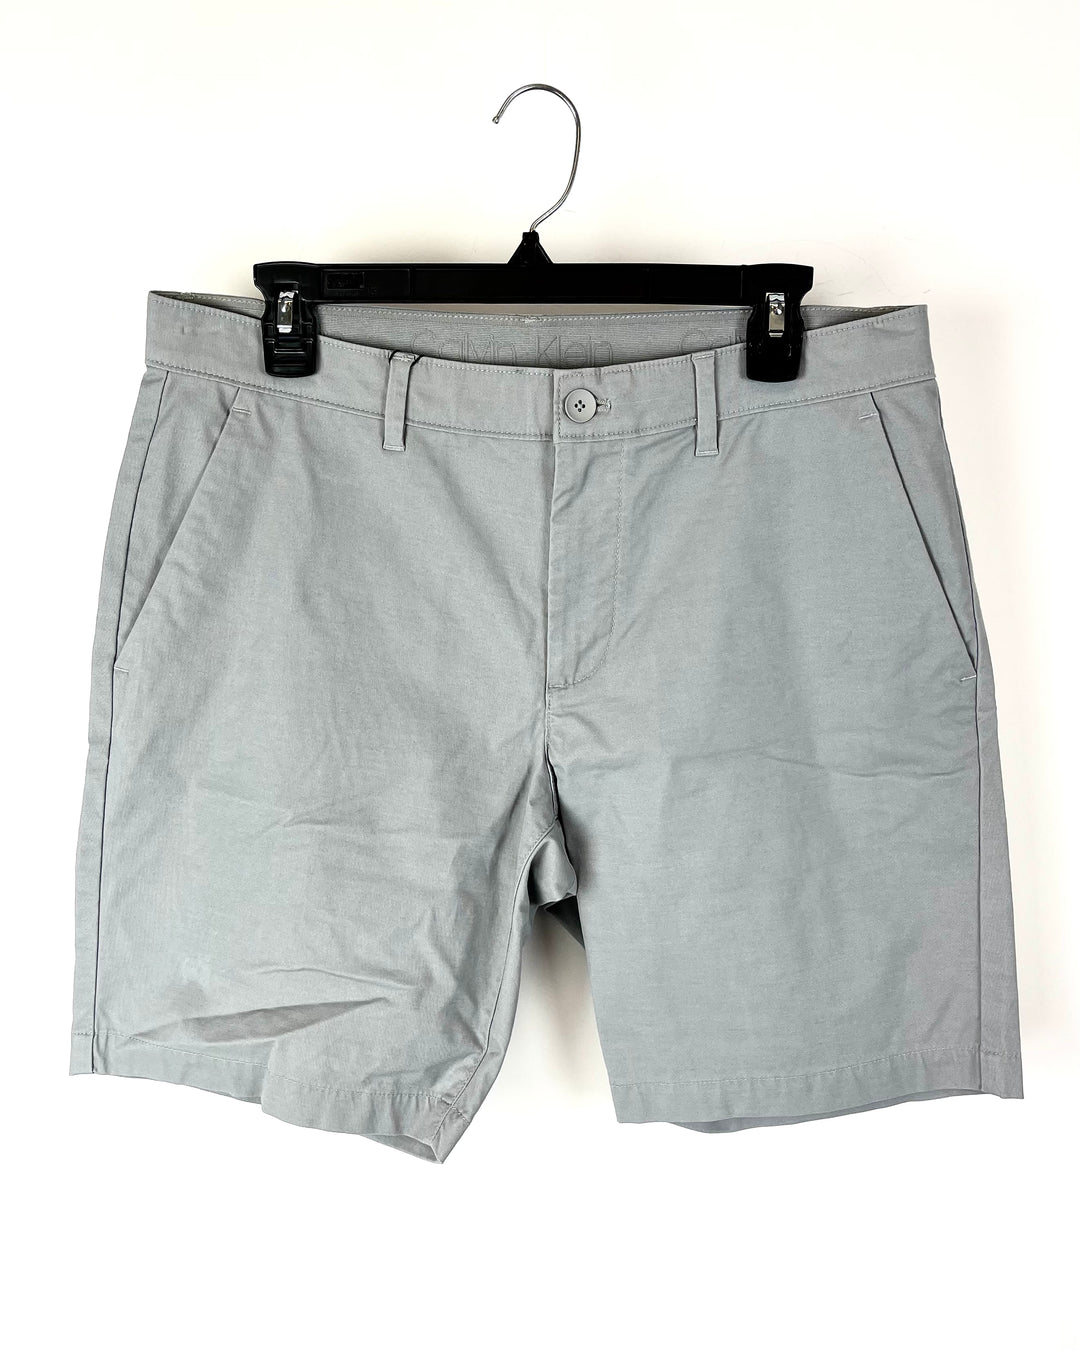 MENS Gray Chino Shorts - Extra Large